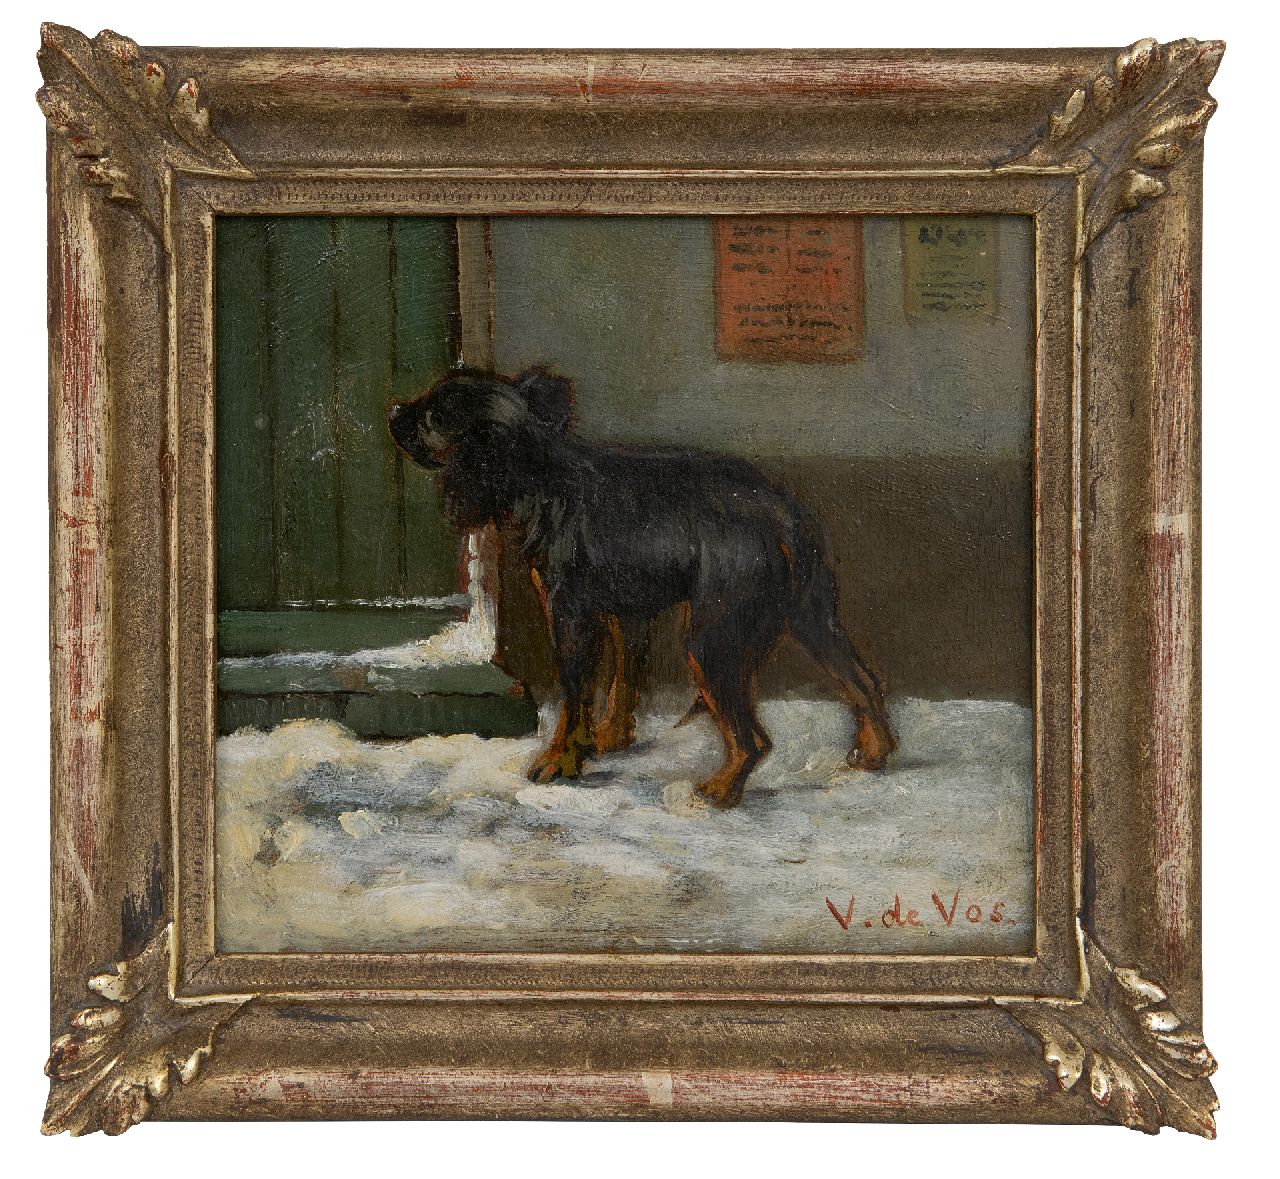 Vos V. de | Vincent de Vos | Paintings offered for sale | Arrived at the destination, oil on canvas 15.6 x 17.1 cm, signed l.r.